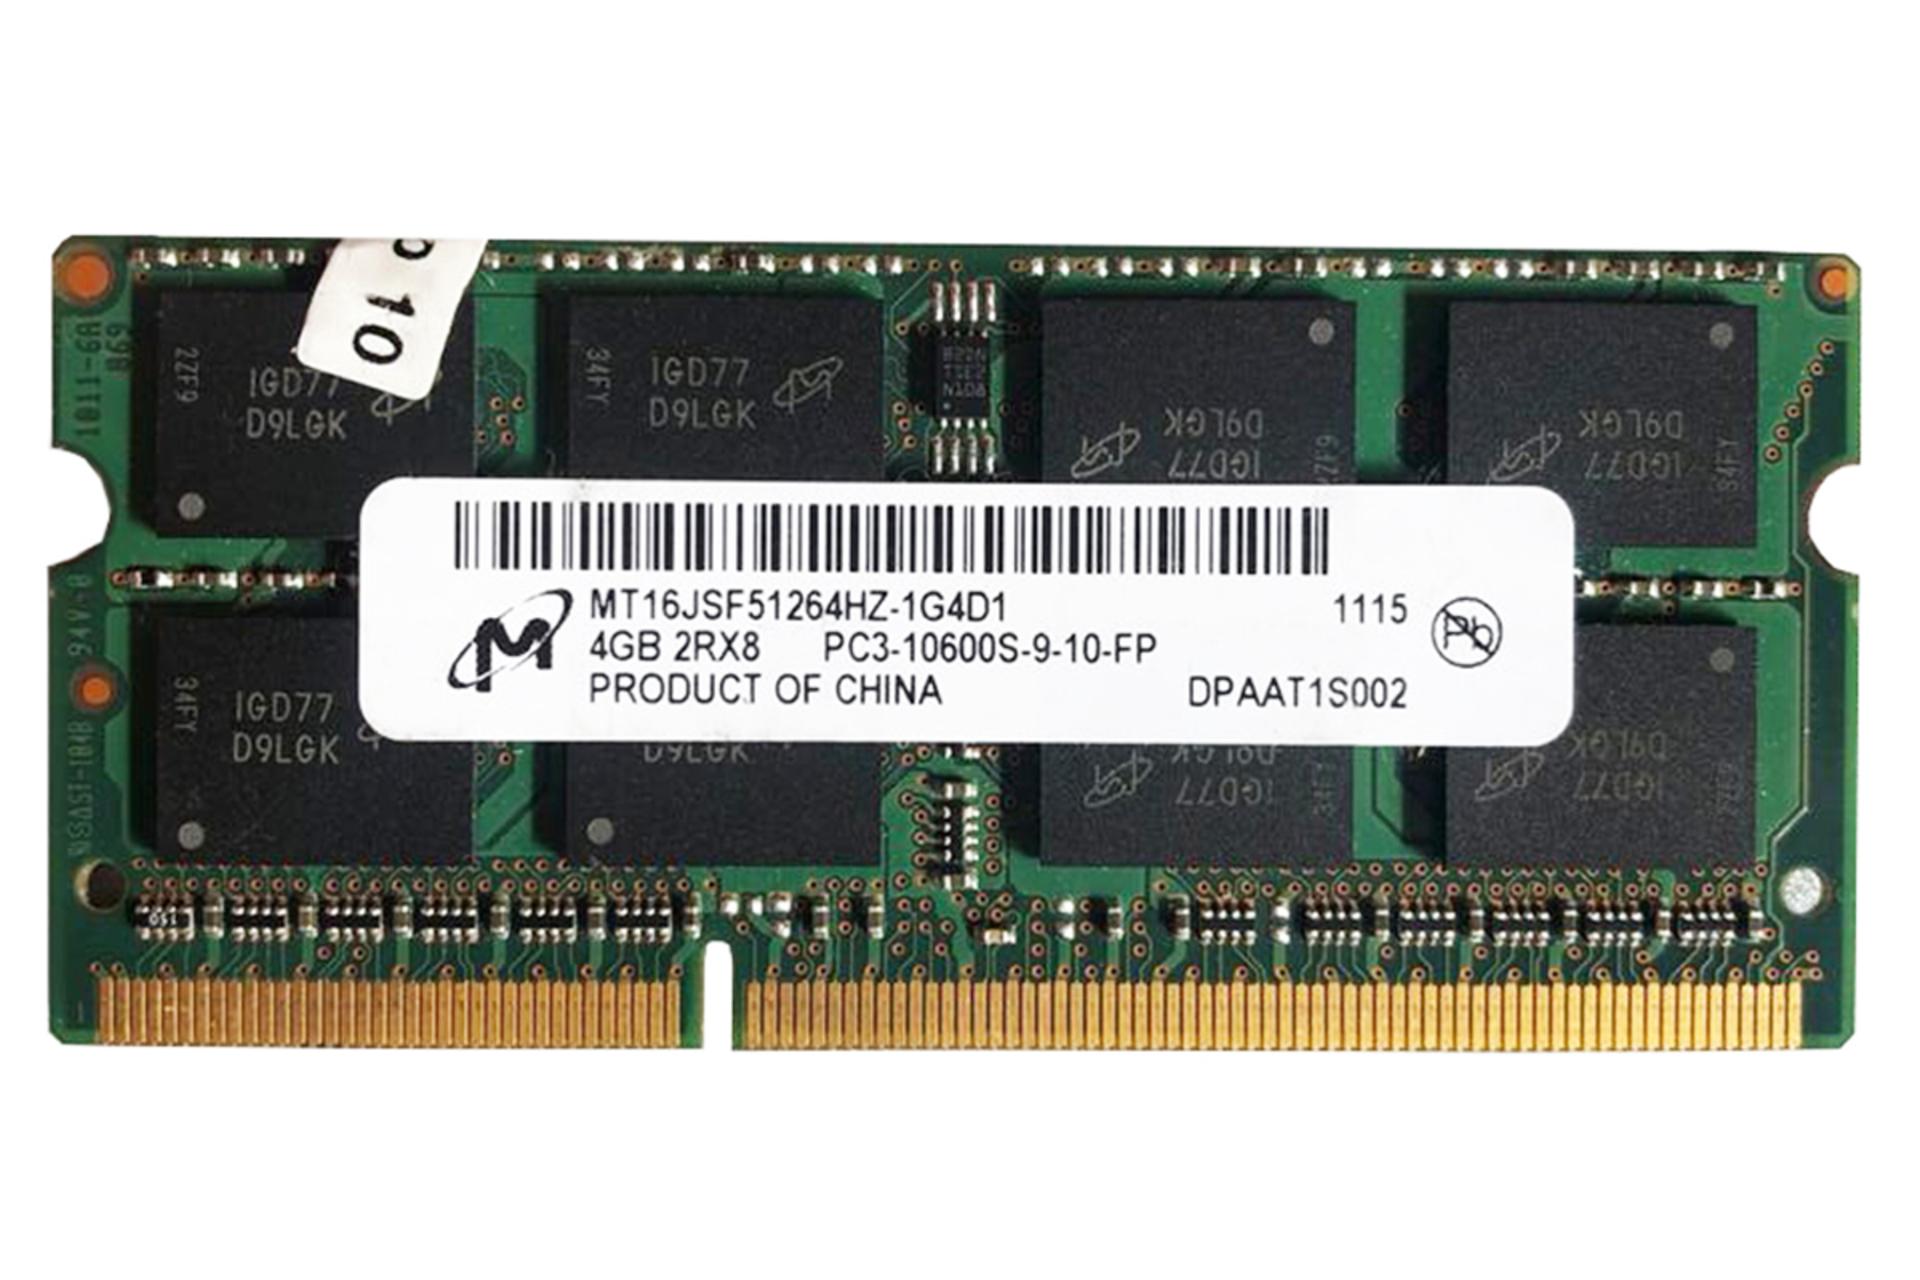 رم مایکرون MT16JSF51264HZ-1G4D1 ظرفیت 4 گیگابایت از نوع DDR3-1333